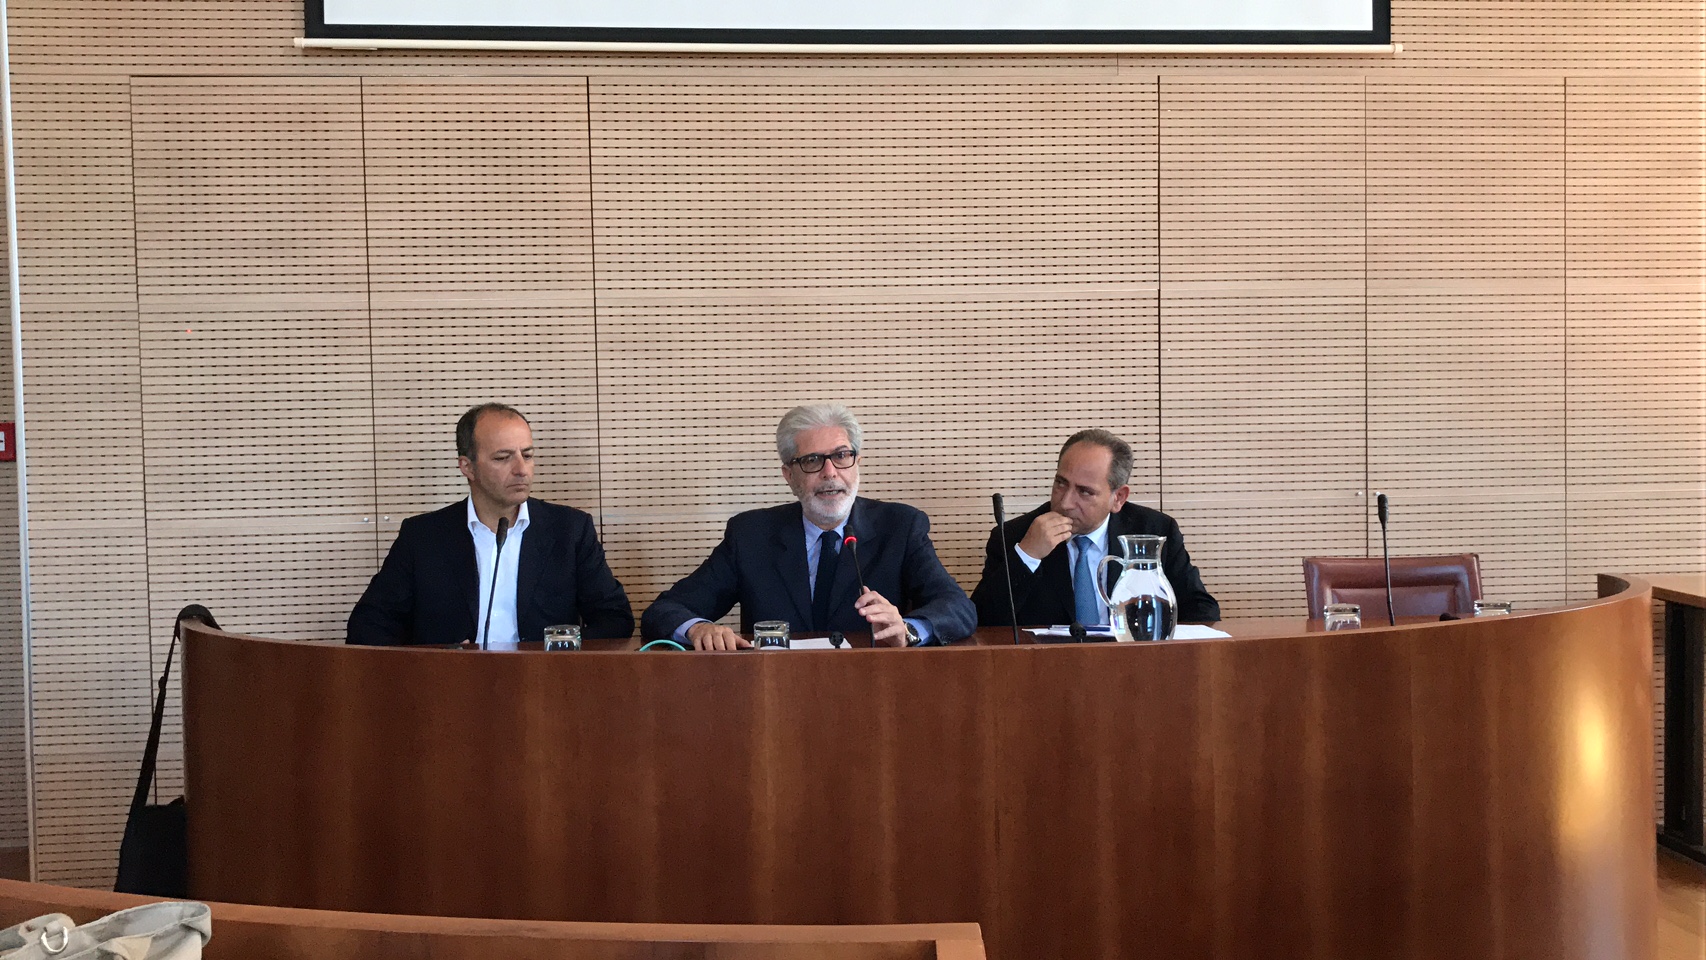 Le nuove sfide della sanità in Sicilia. Da sinistra prof. Giuseppe Navarra, il prof. Giovanni Tuccari e il dott. Walter Messina